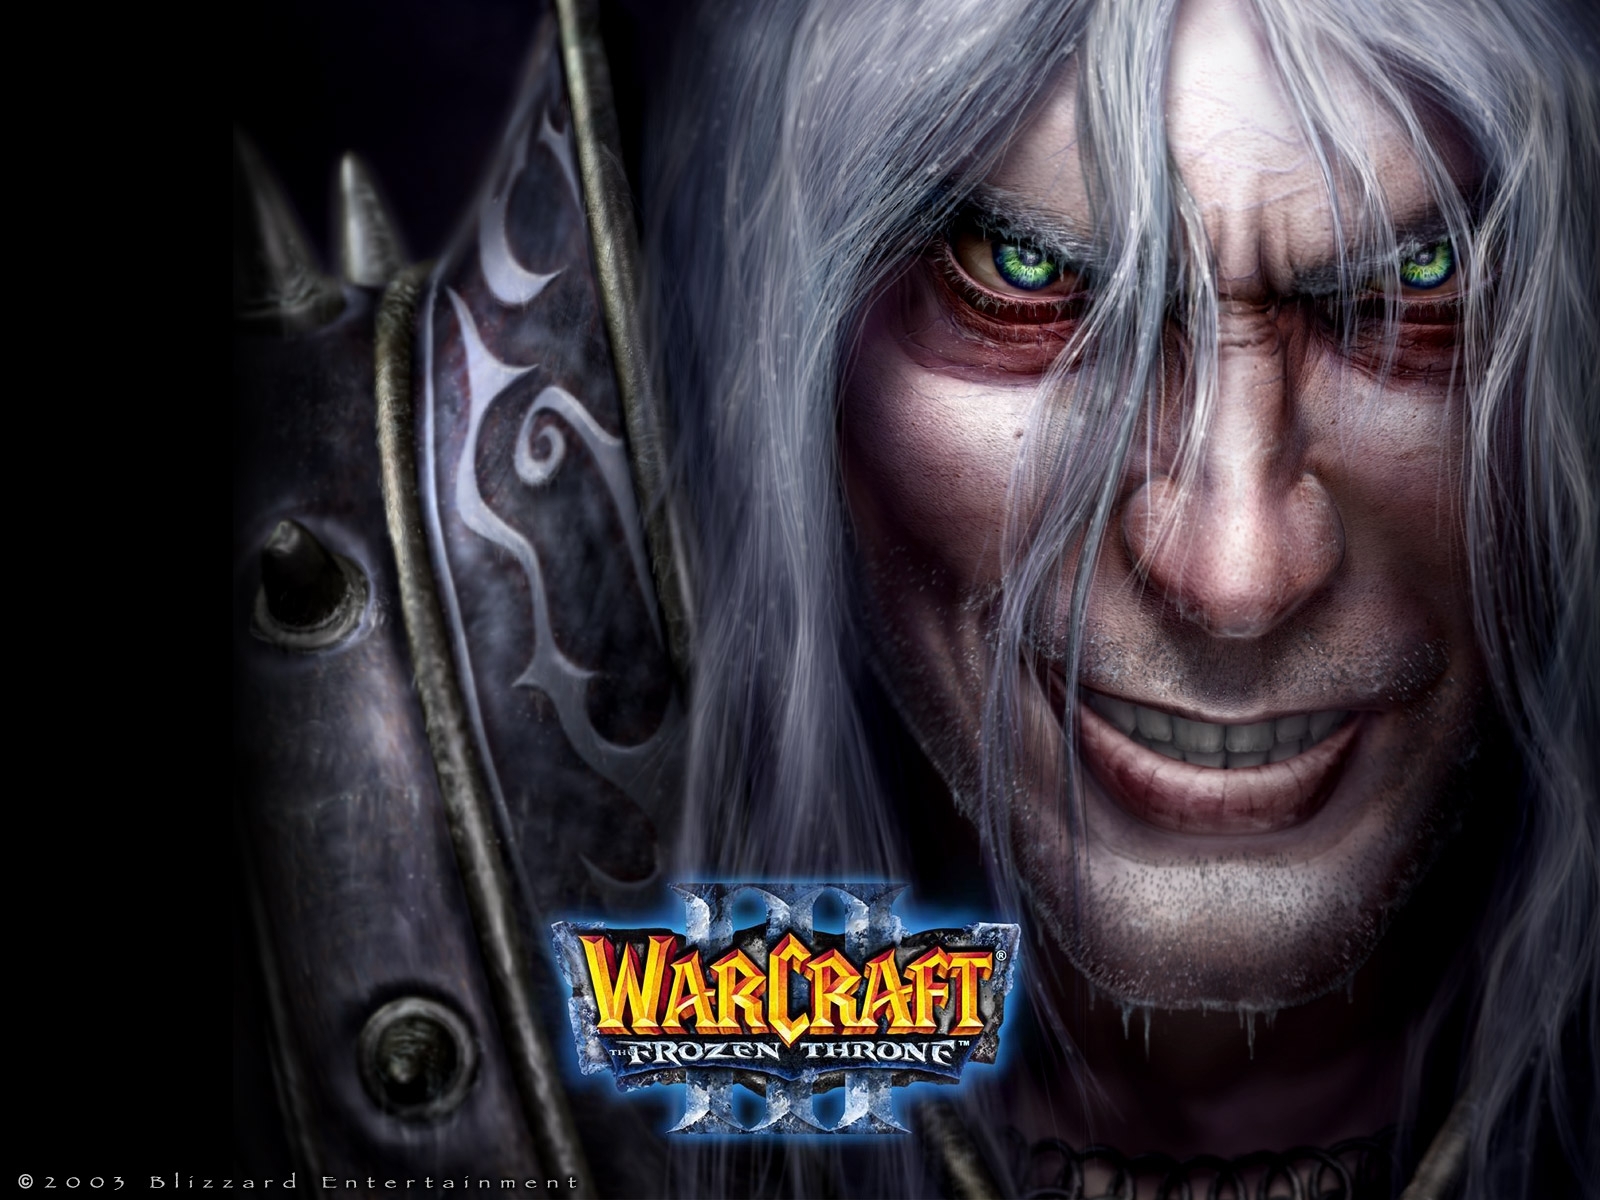 Популярные заставки и фоны Warcraft на компьютер